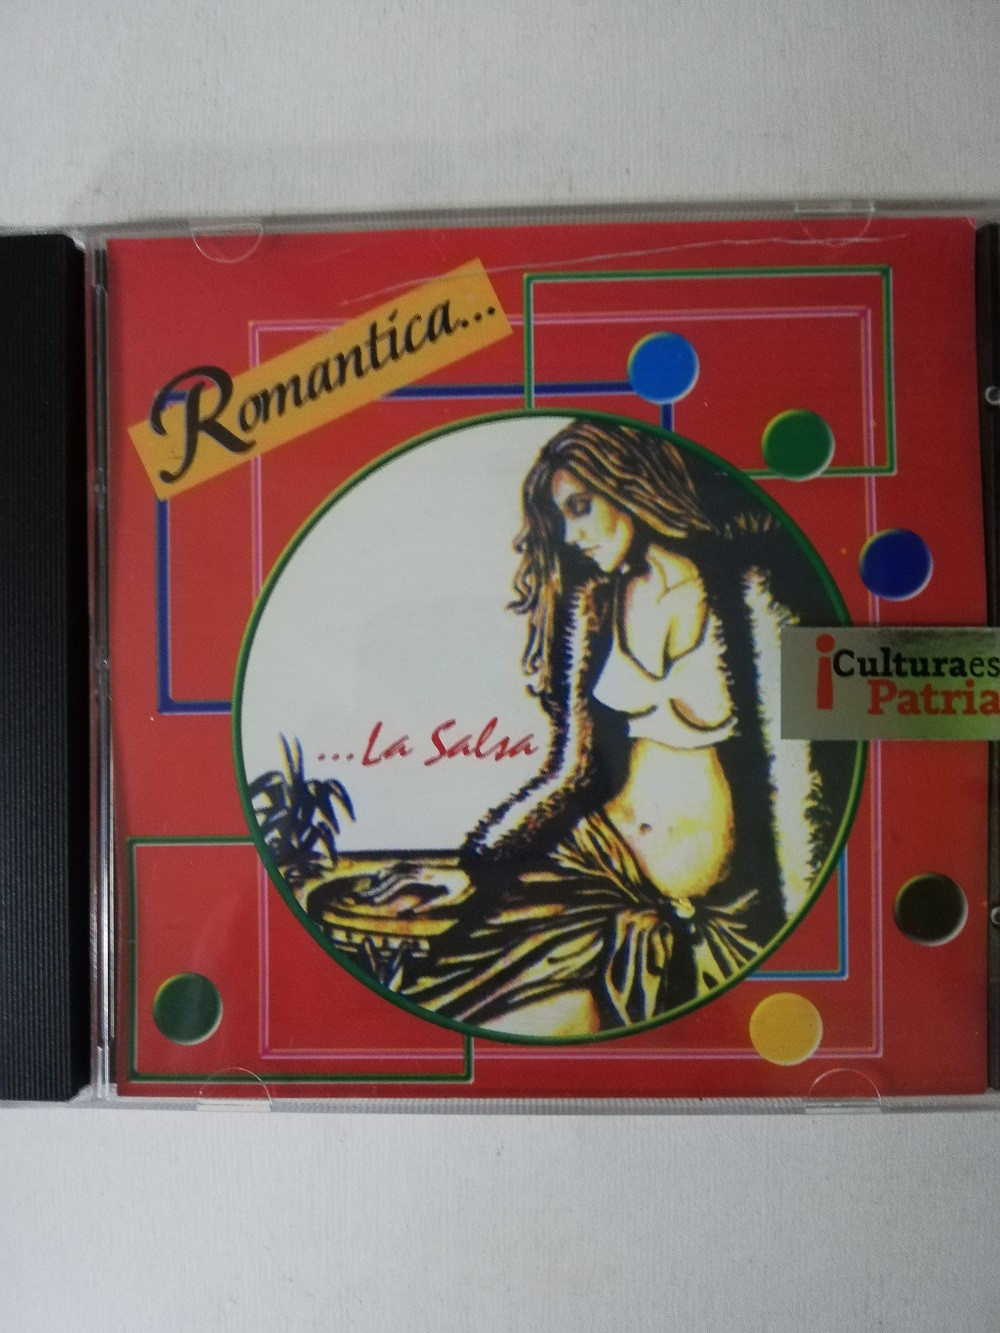 Imagen CD ROMÁNTICA...LA SALSA - ARTISTAS VARIOS 1